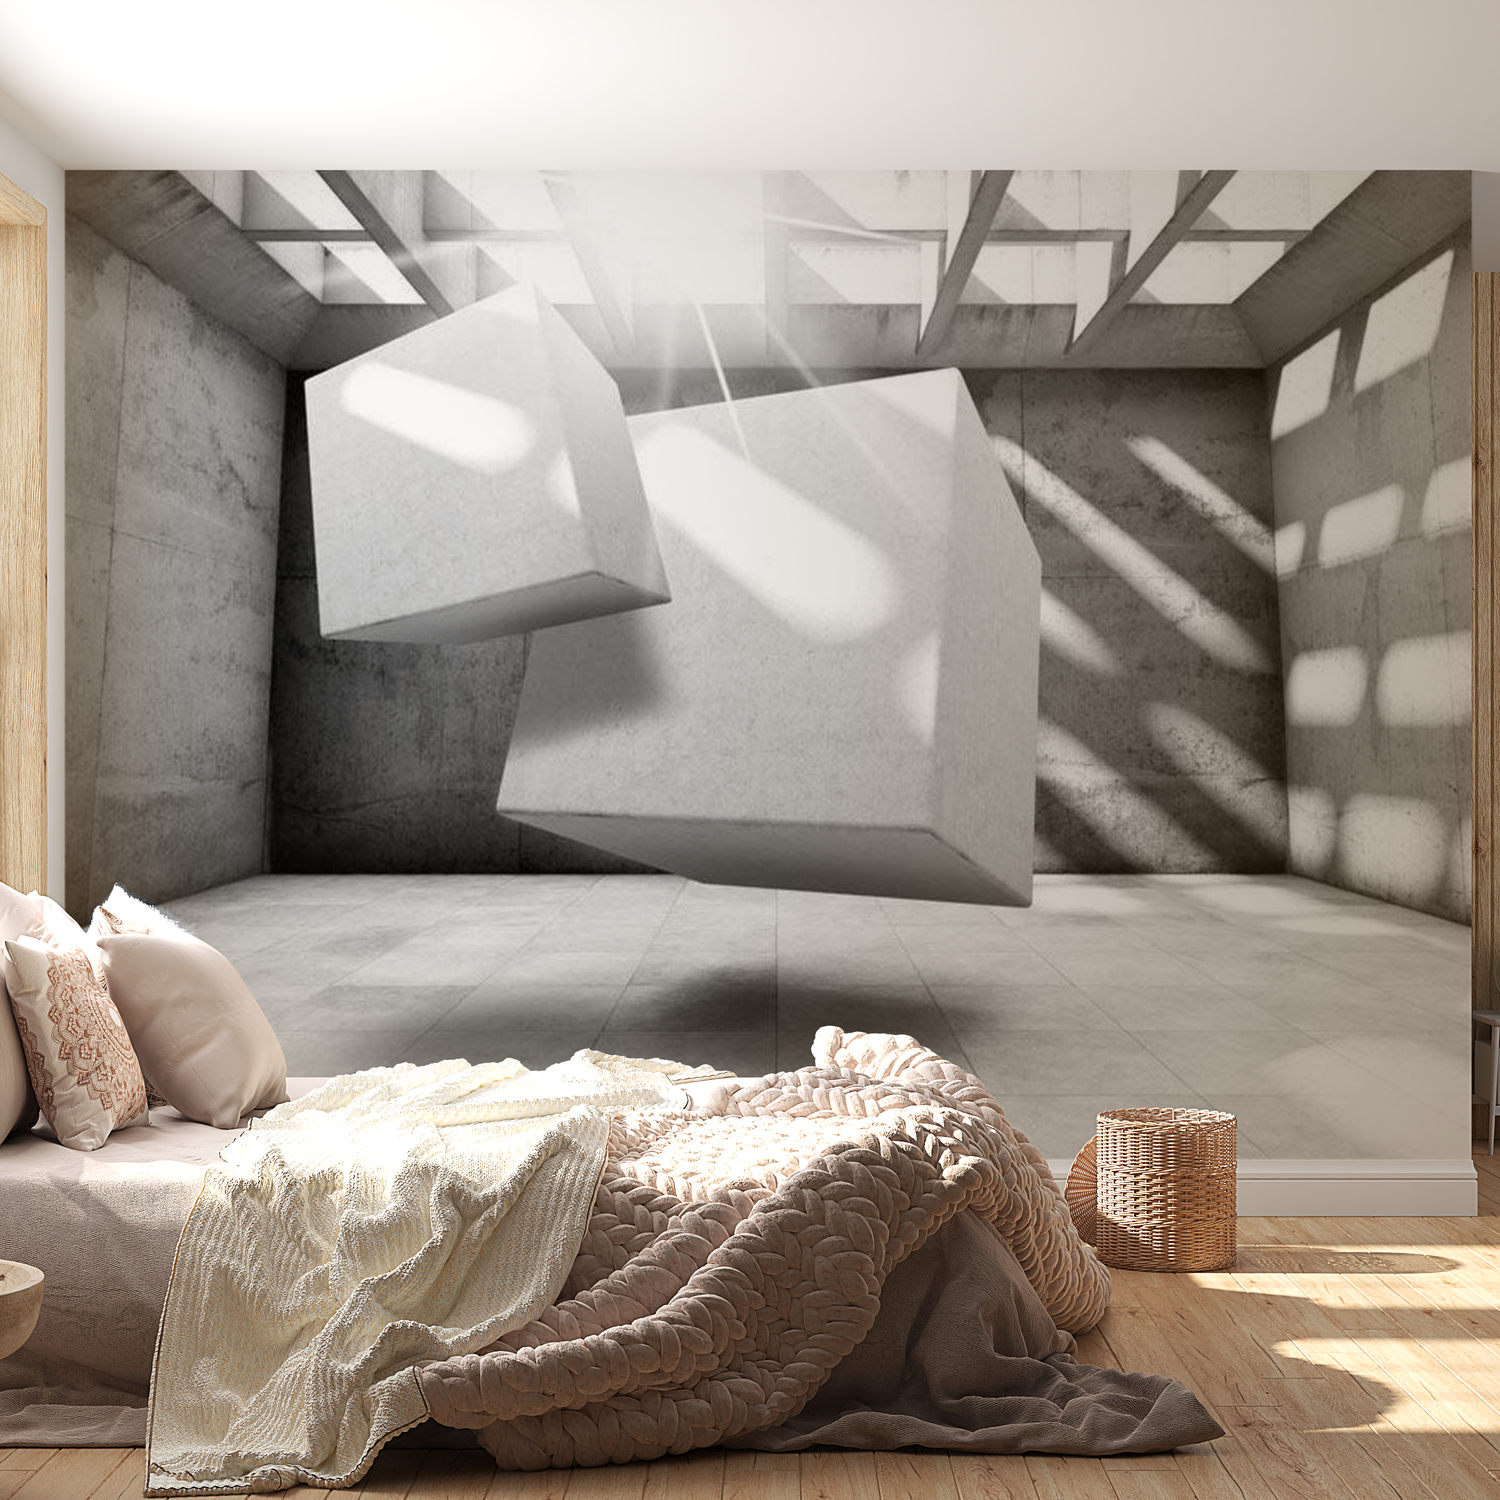 3D Illusion Wallpaper Wall Mural - Dancing Squares 39"Wx27"H